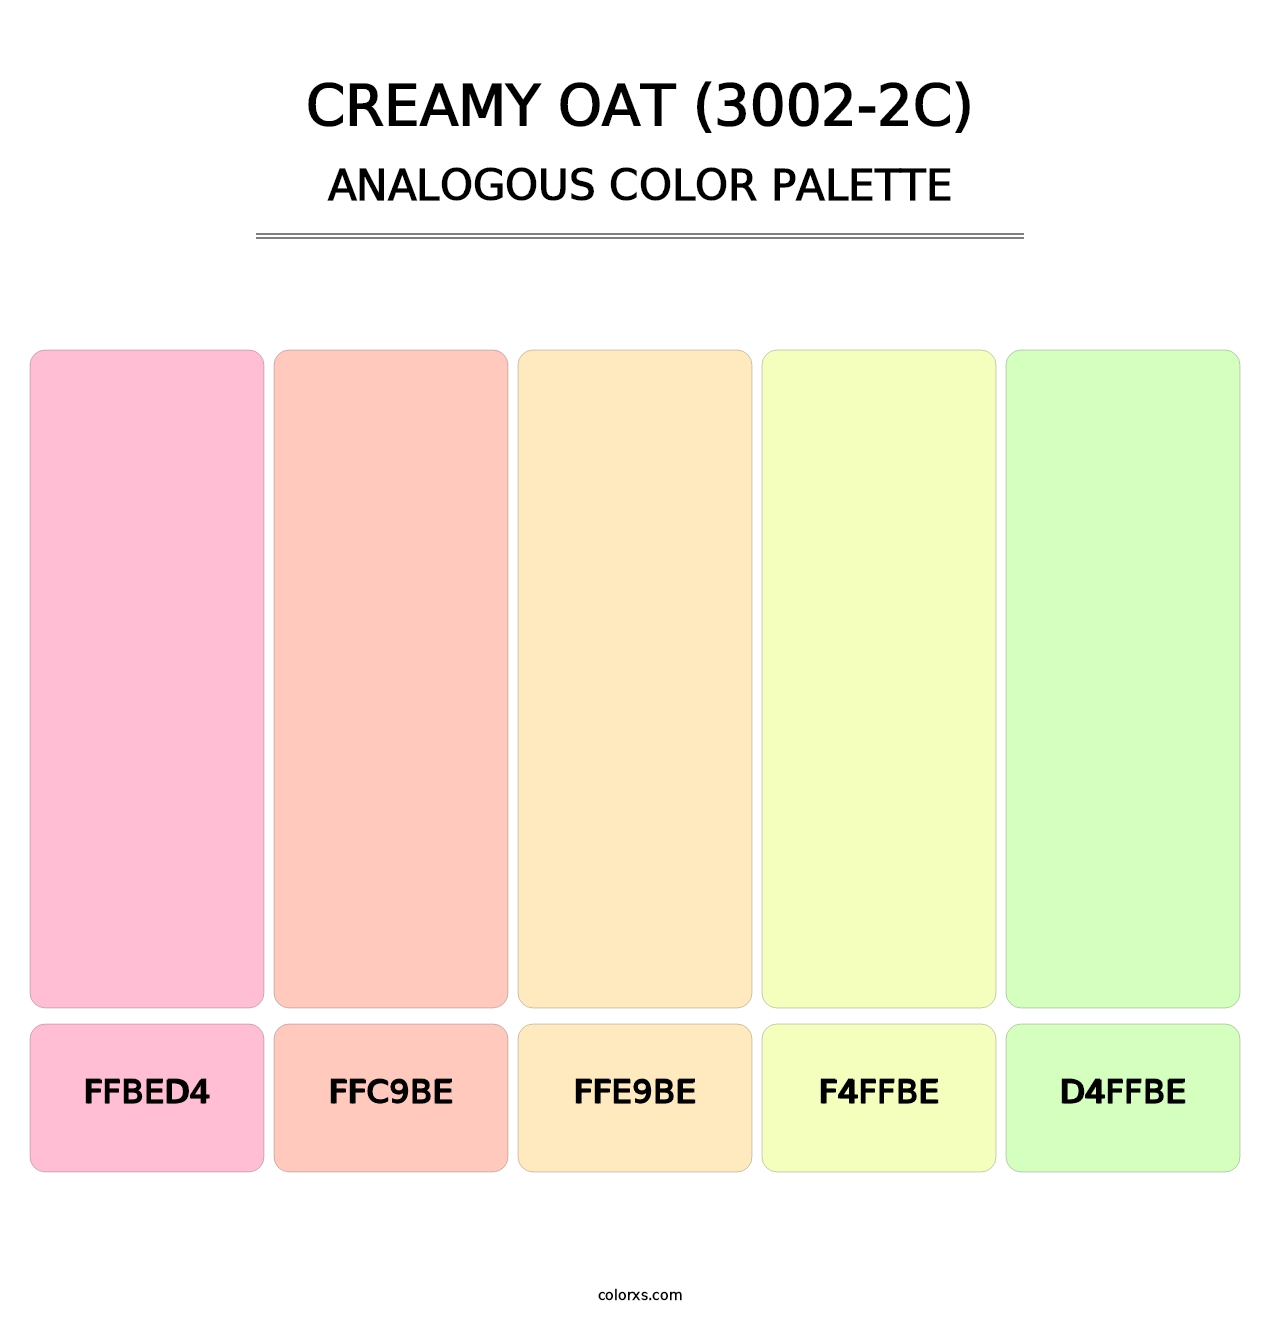 Creamy Oat (3002-2C) - Analogous Color Palette